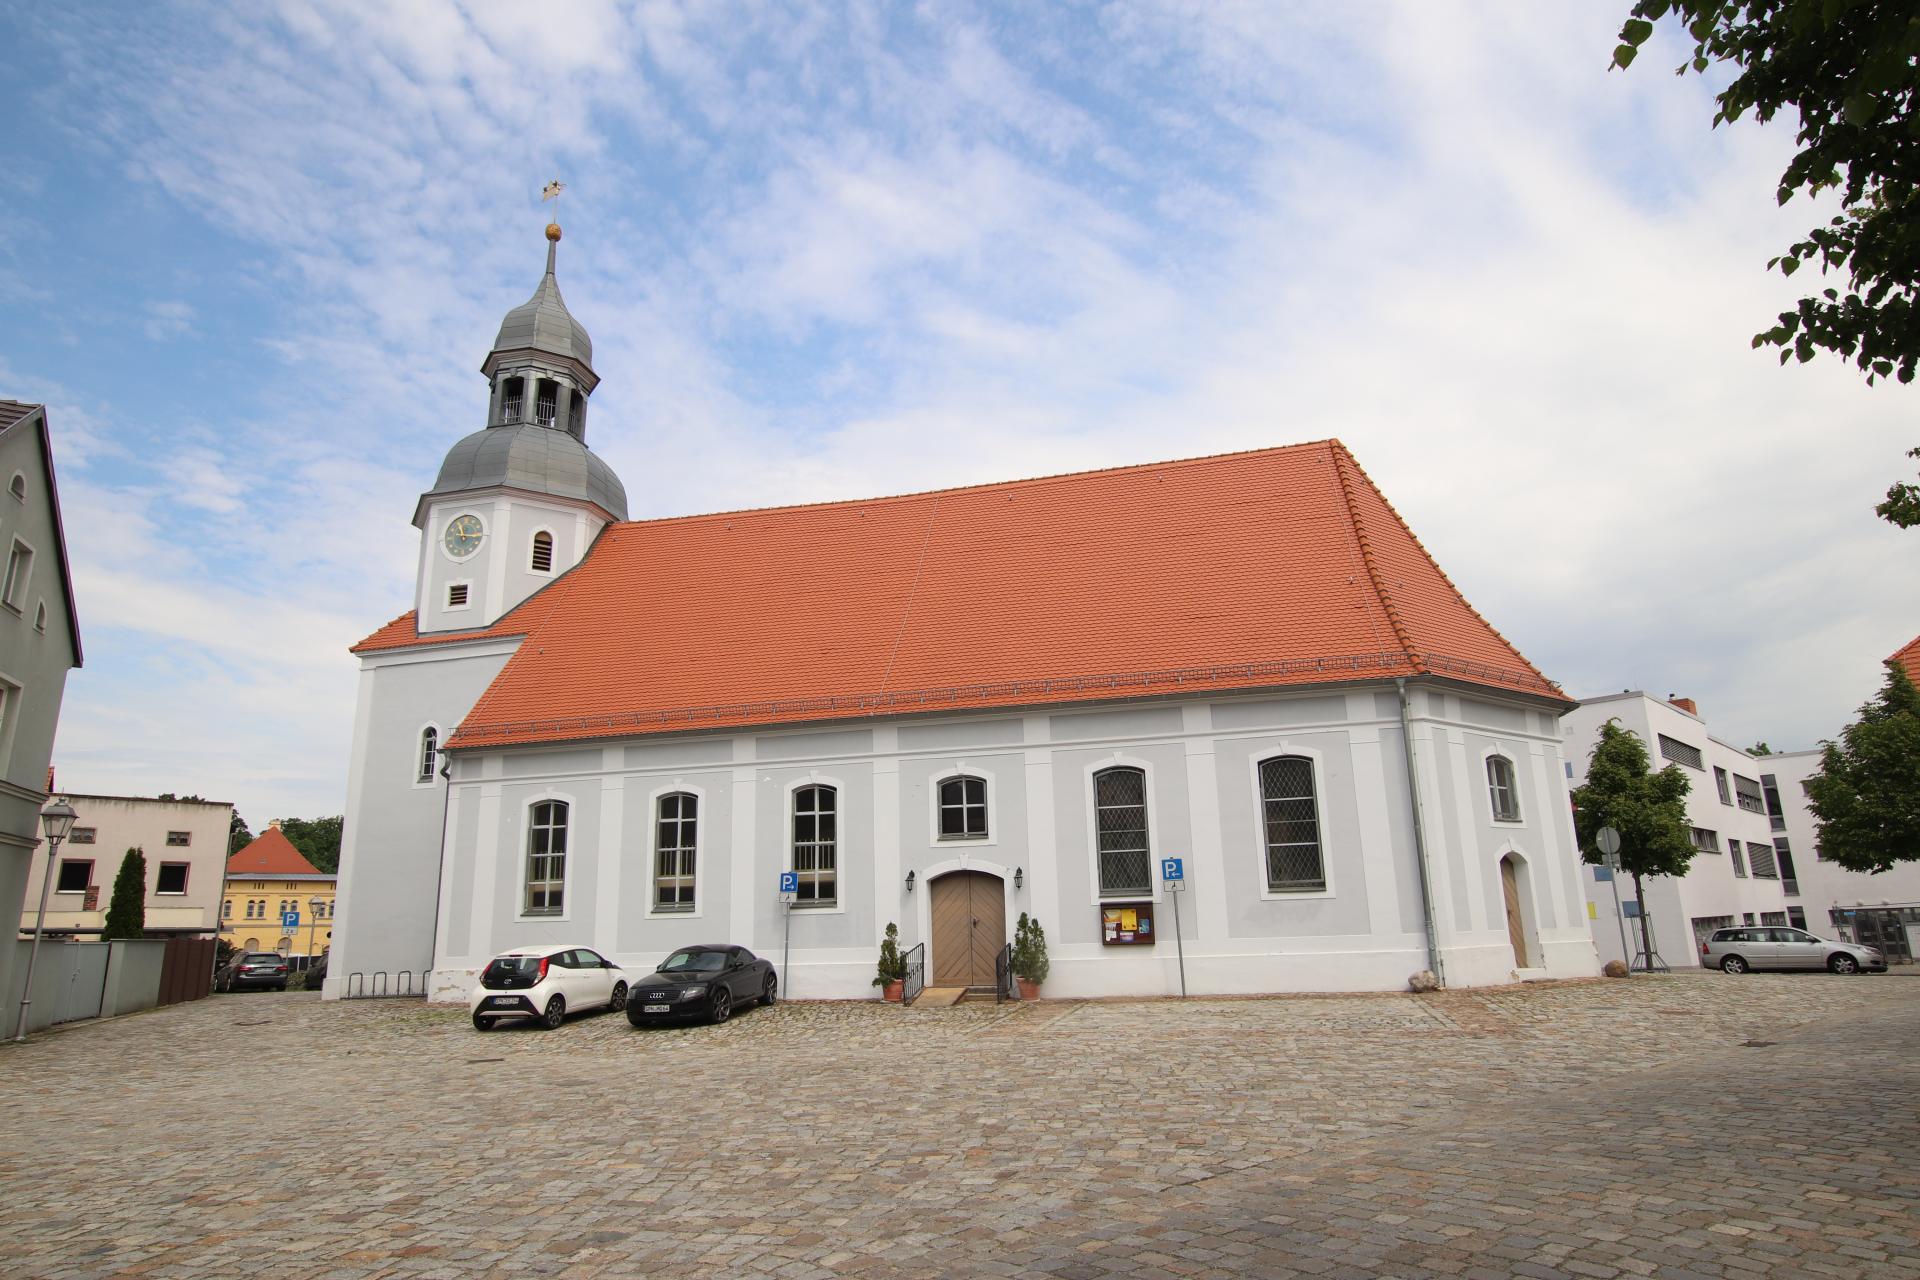 Kirche Drebkau (Foto: Maria Fichtner)